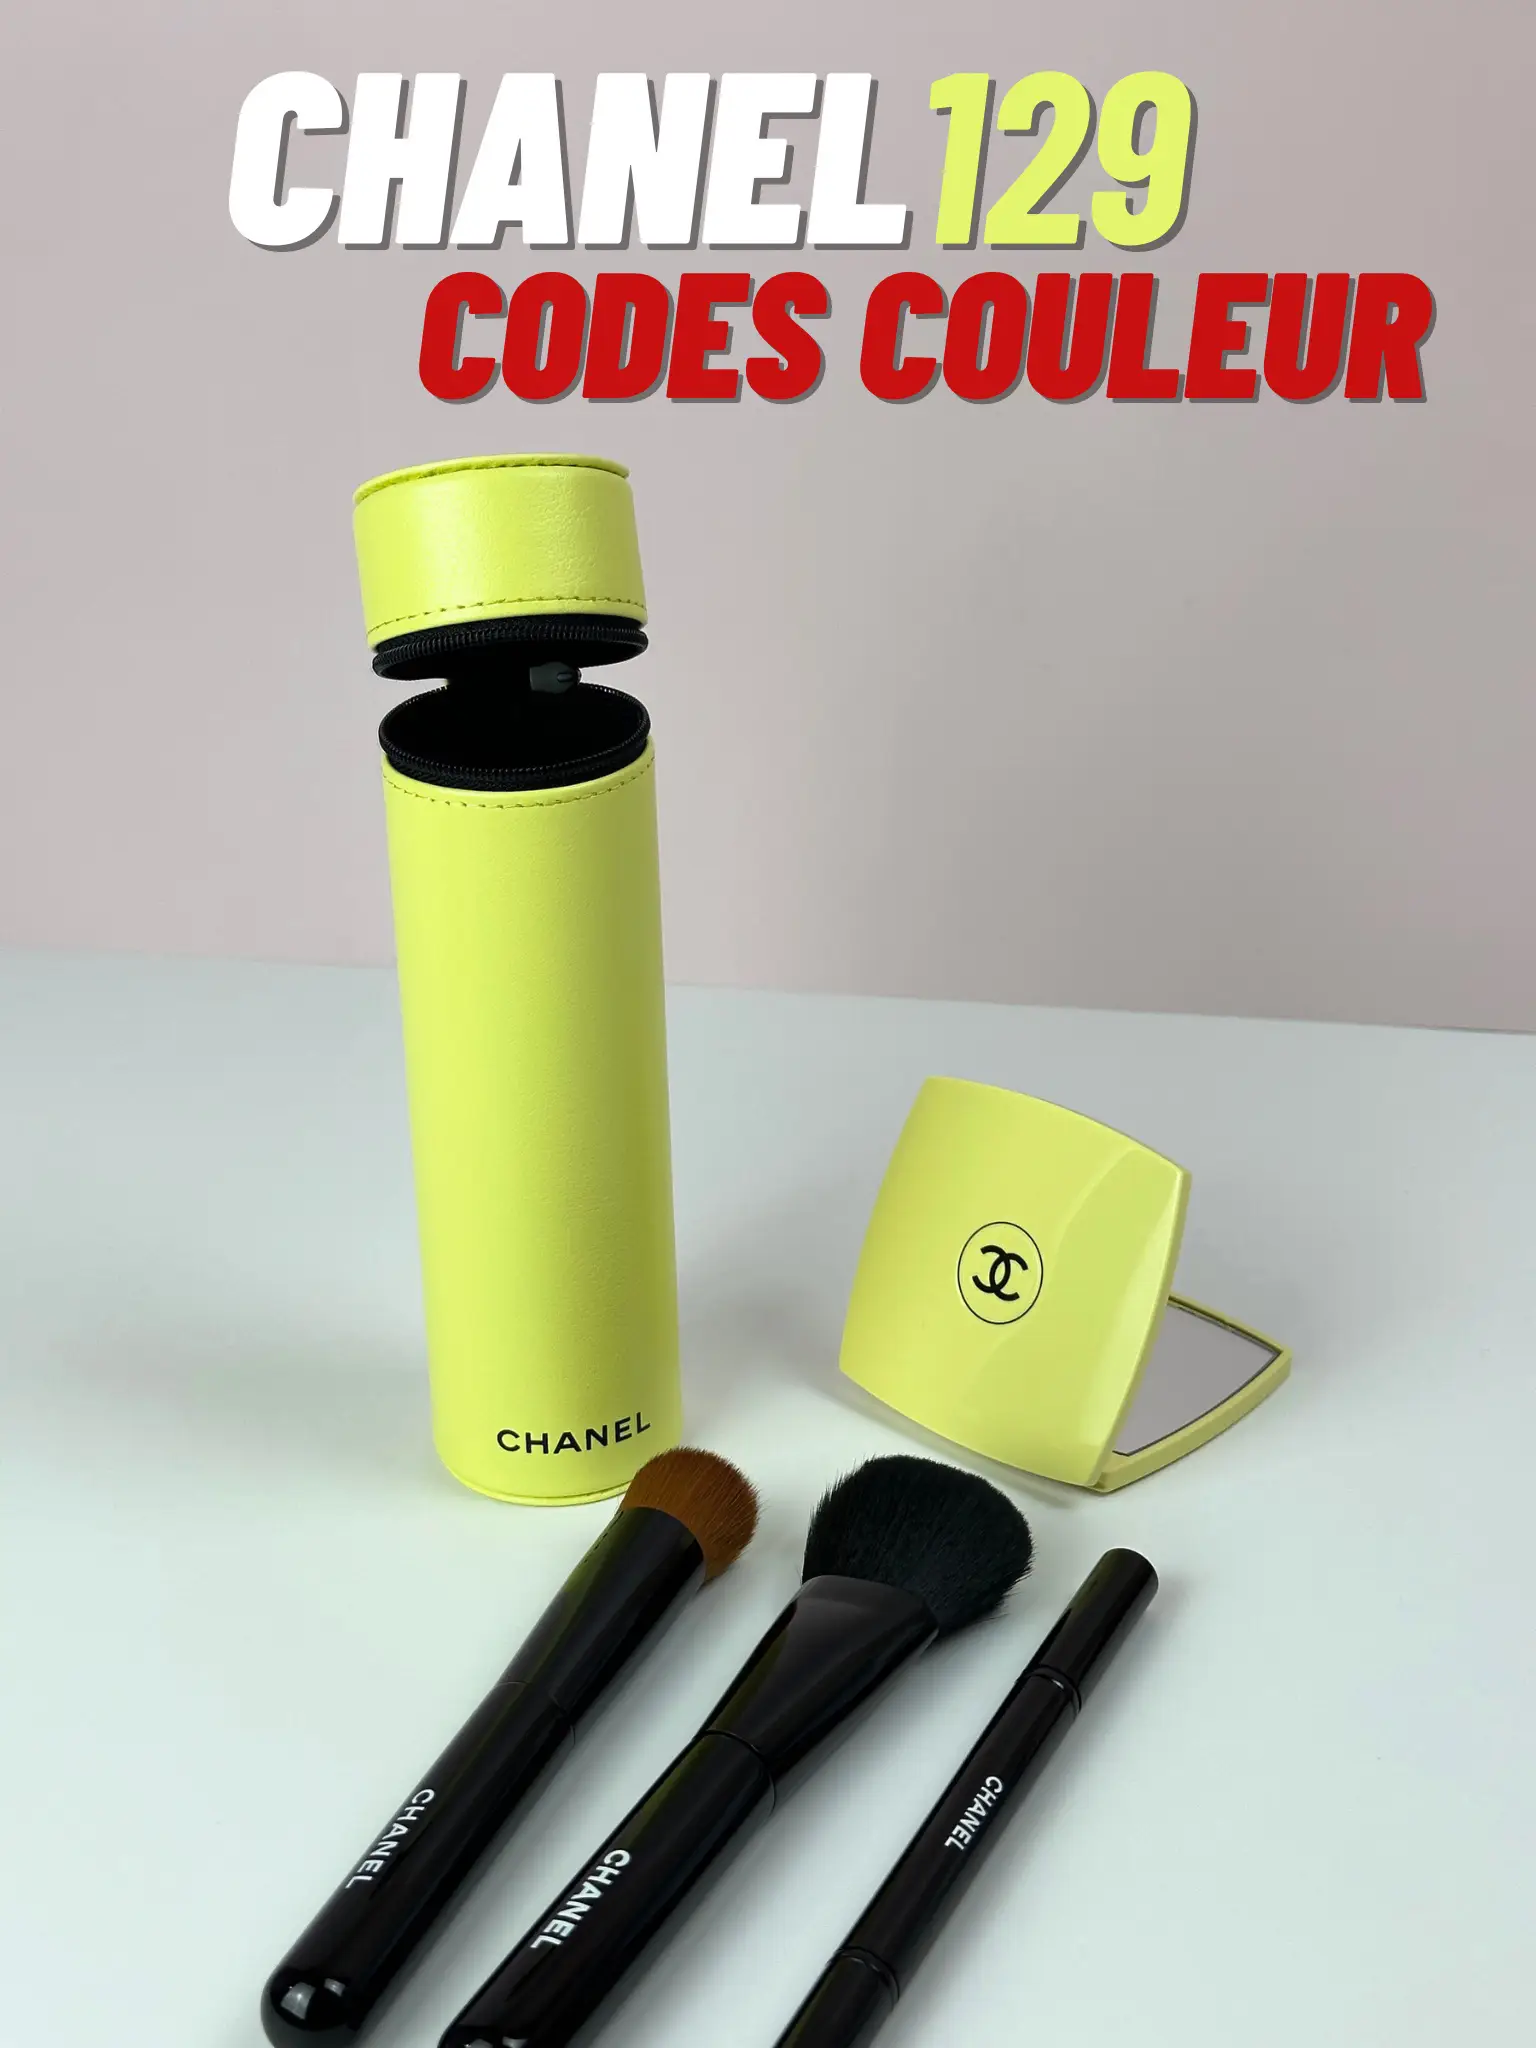 Chanel Codes Couleur Unboxing 